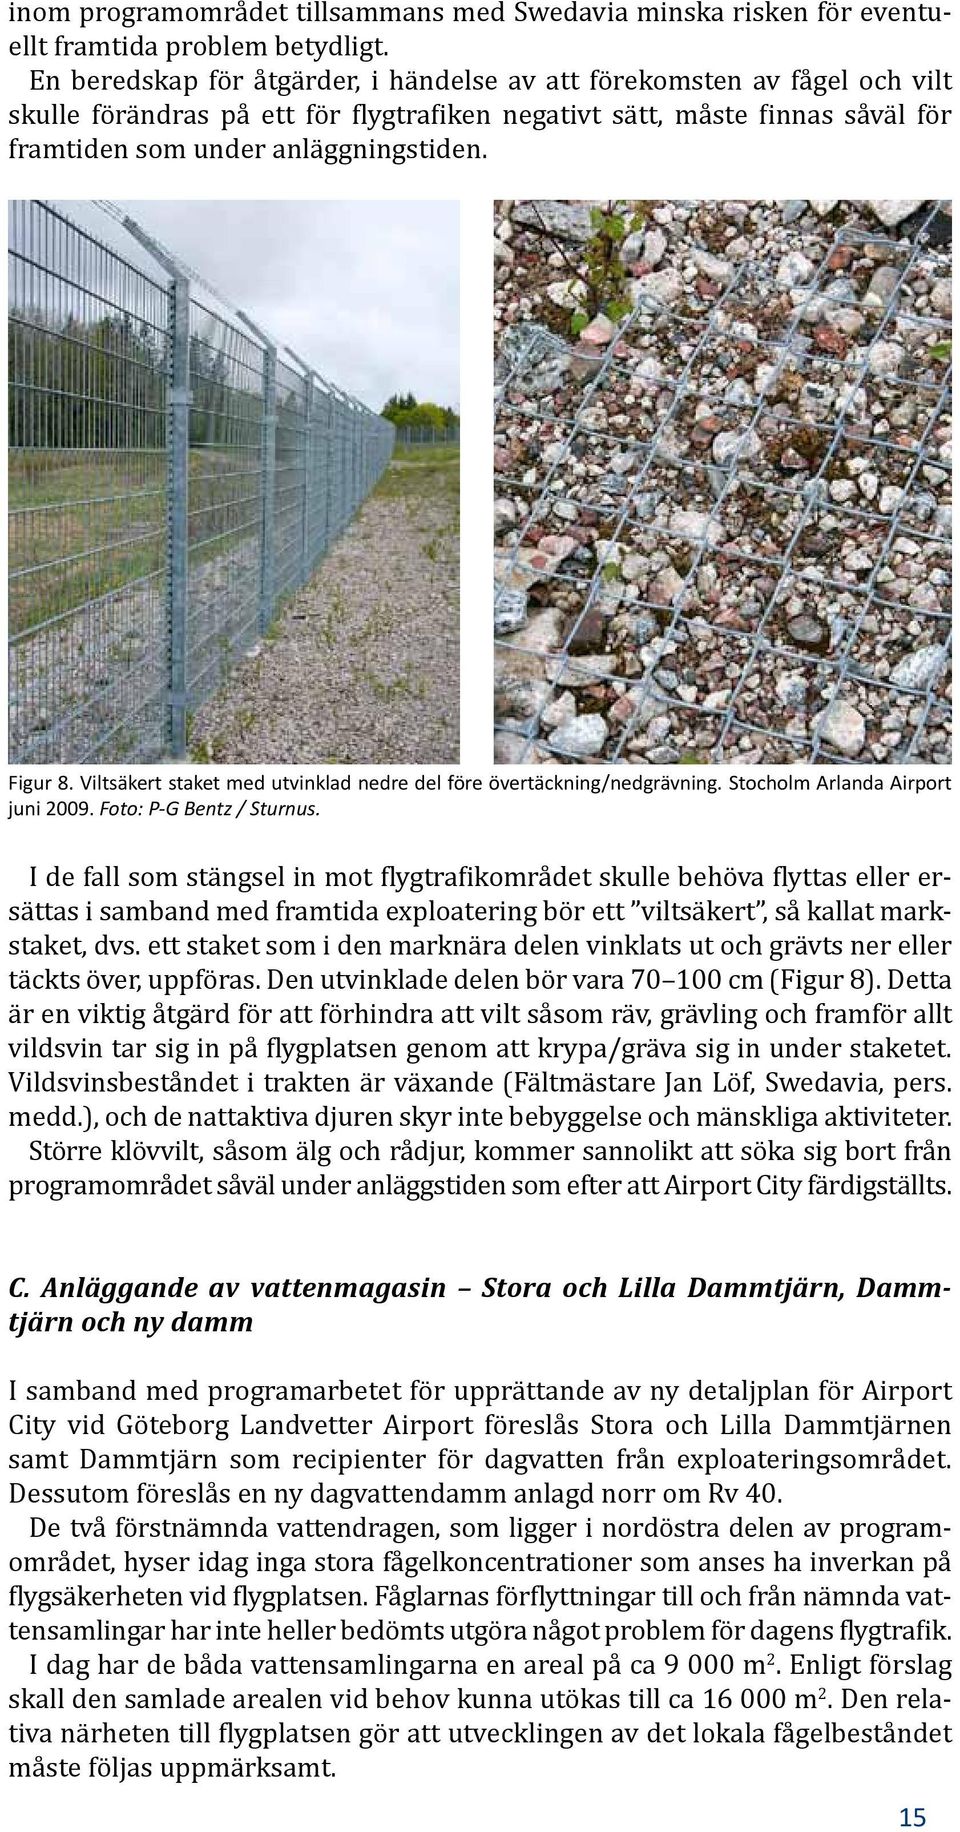 Viltsäkert staket med utvinklad nedre del före övertäckning/nedgrävning. Stocholm Arlanda Airport juni 2009. Foto: P-G Bentz / Sturnus.